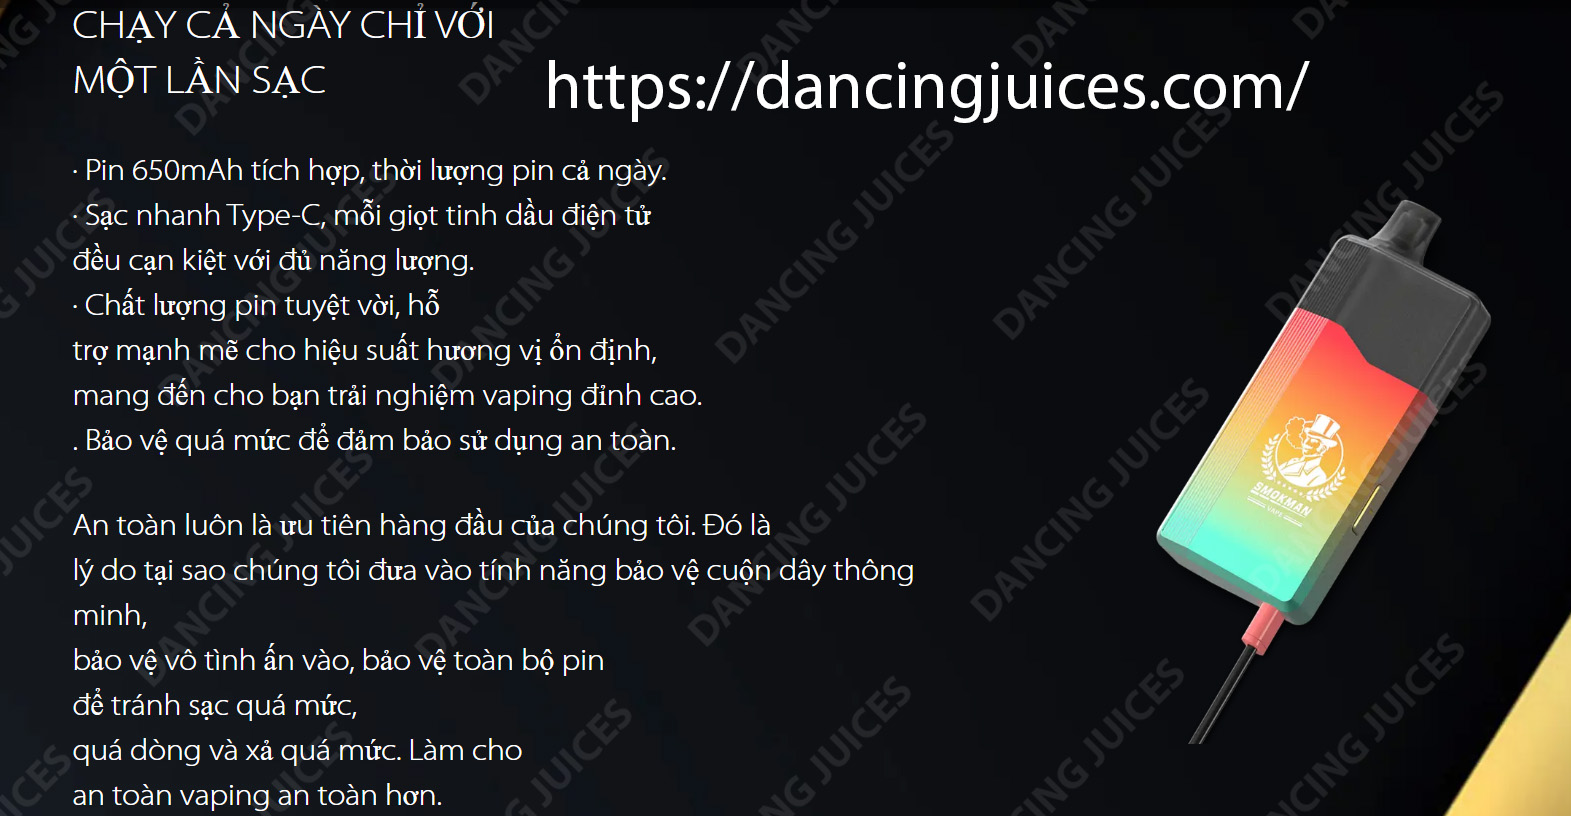 Smokman Gen 10000puffs: Su lua chon hoan hao cho vaping de dang Phone: 0971.829.269